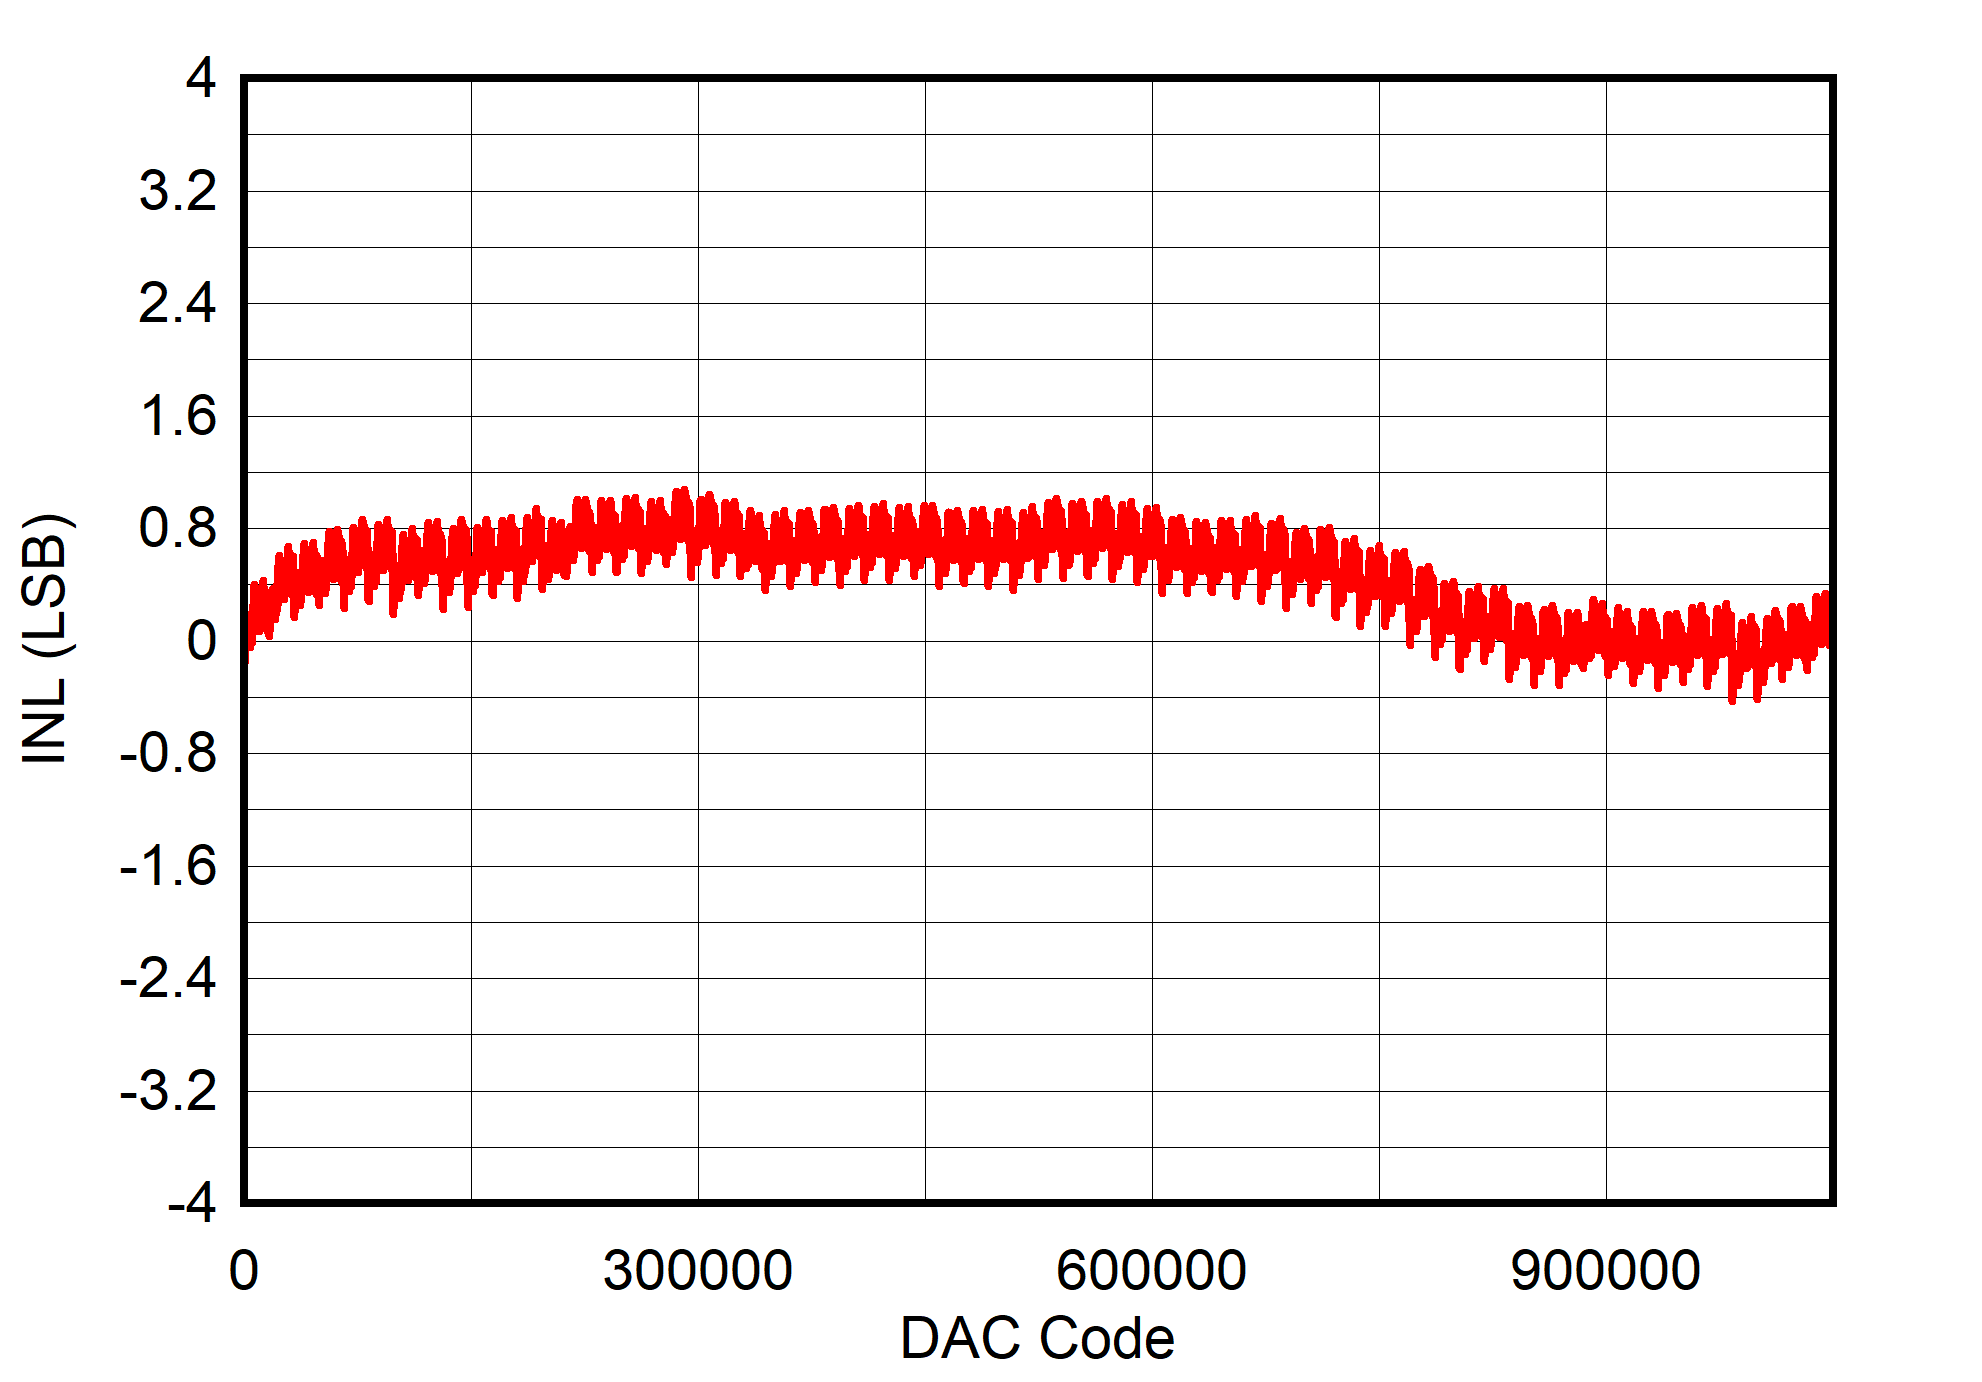 DAC11001A DAC91001 DAC81001 inl-0v-to-5v-measured-on-evm.png